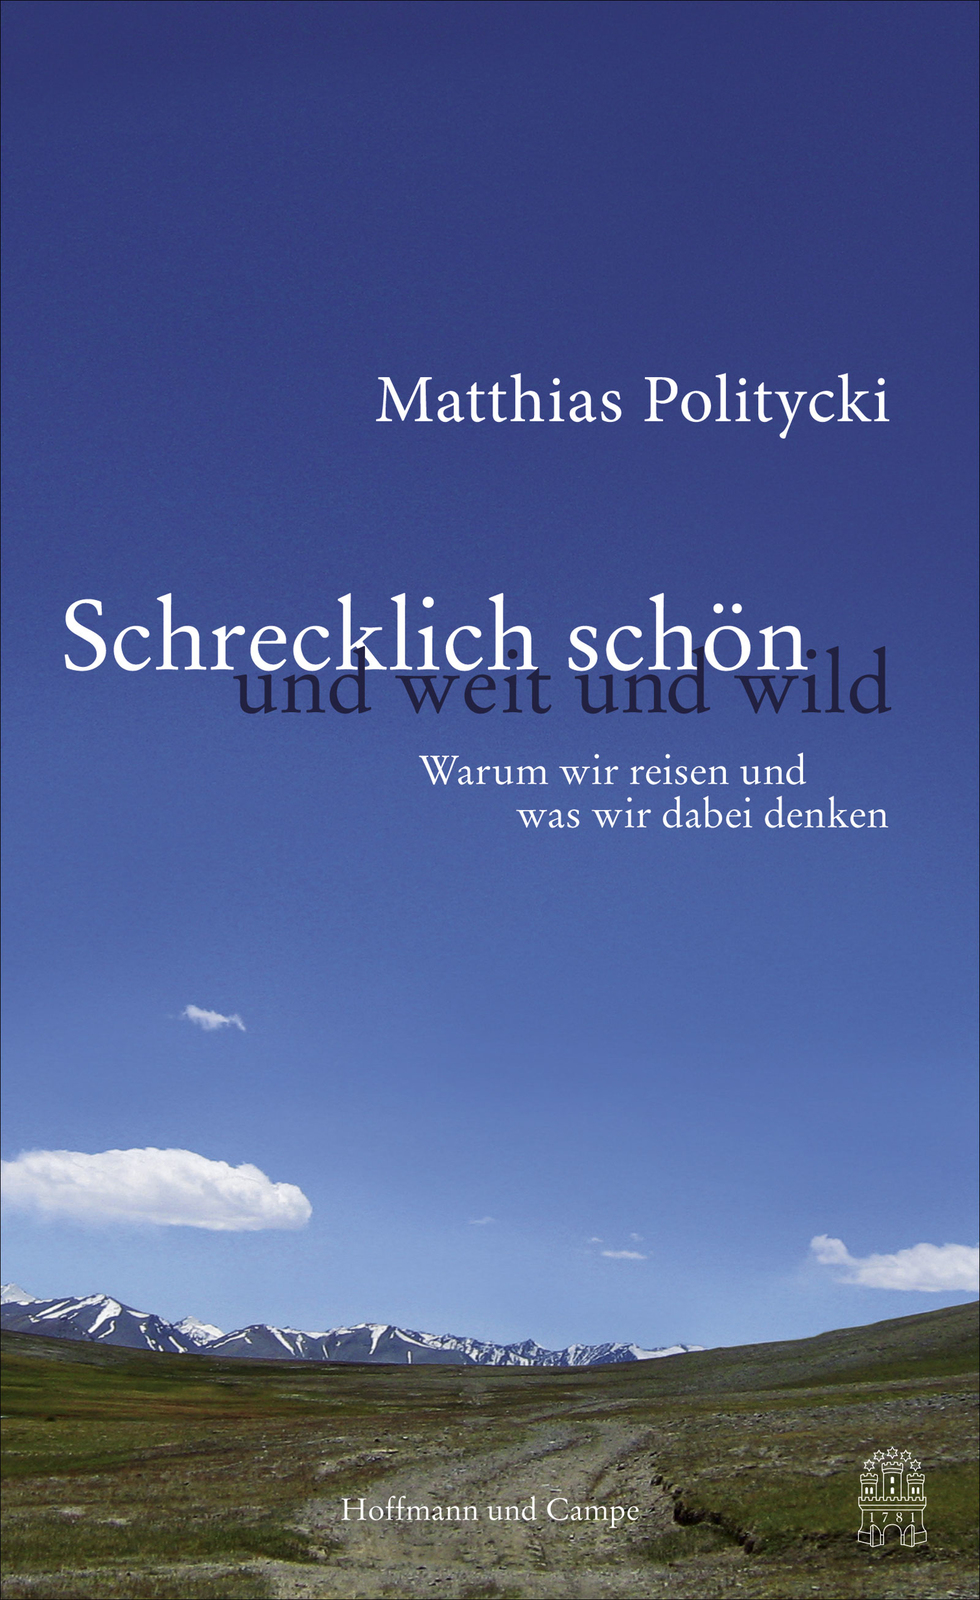 Matthias Politicky, Schrecklich schön, Buch, Hoffmann und Campe